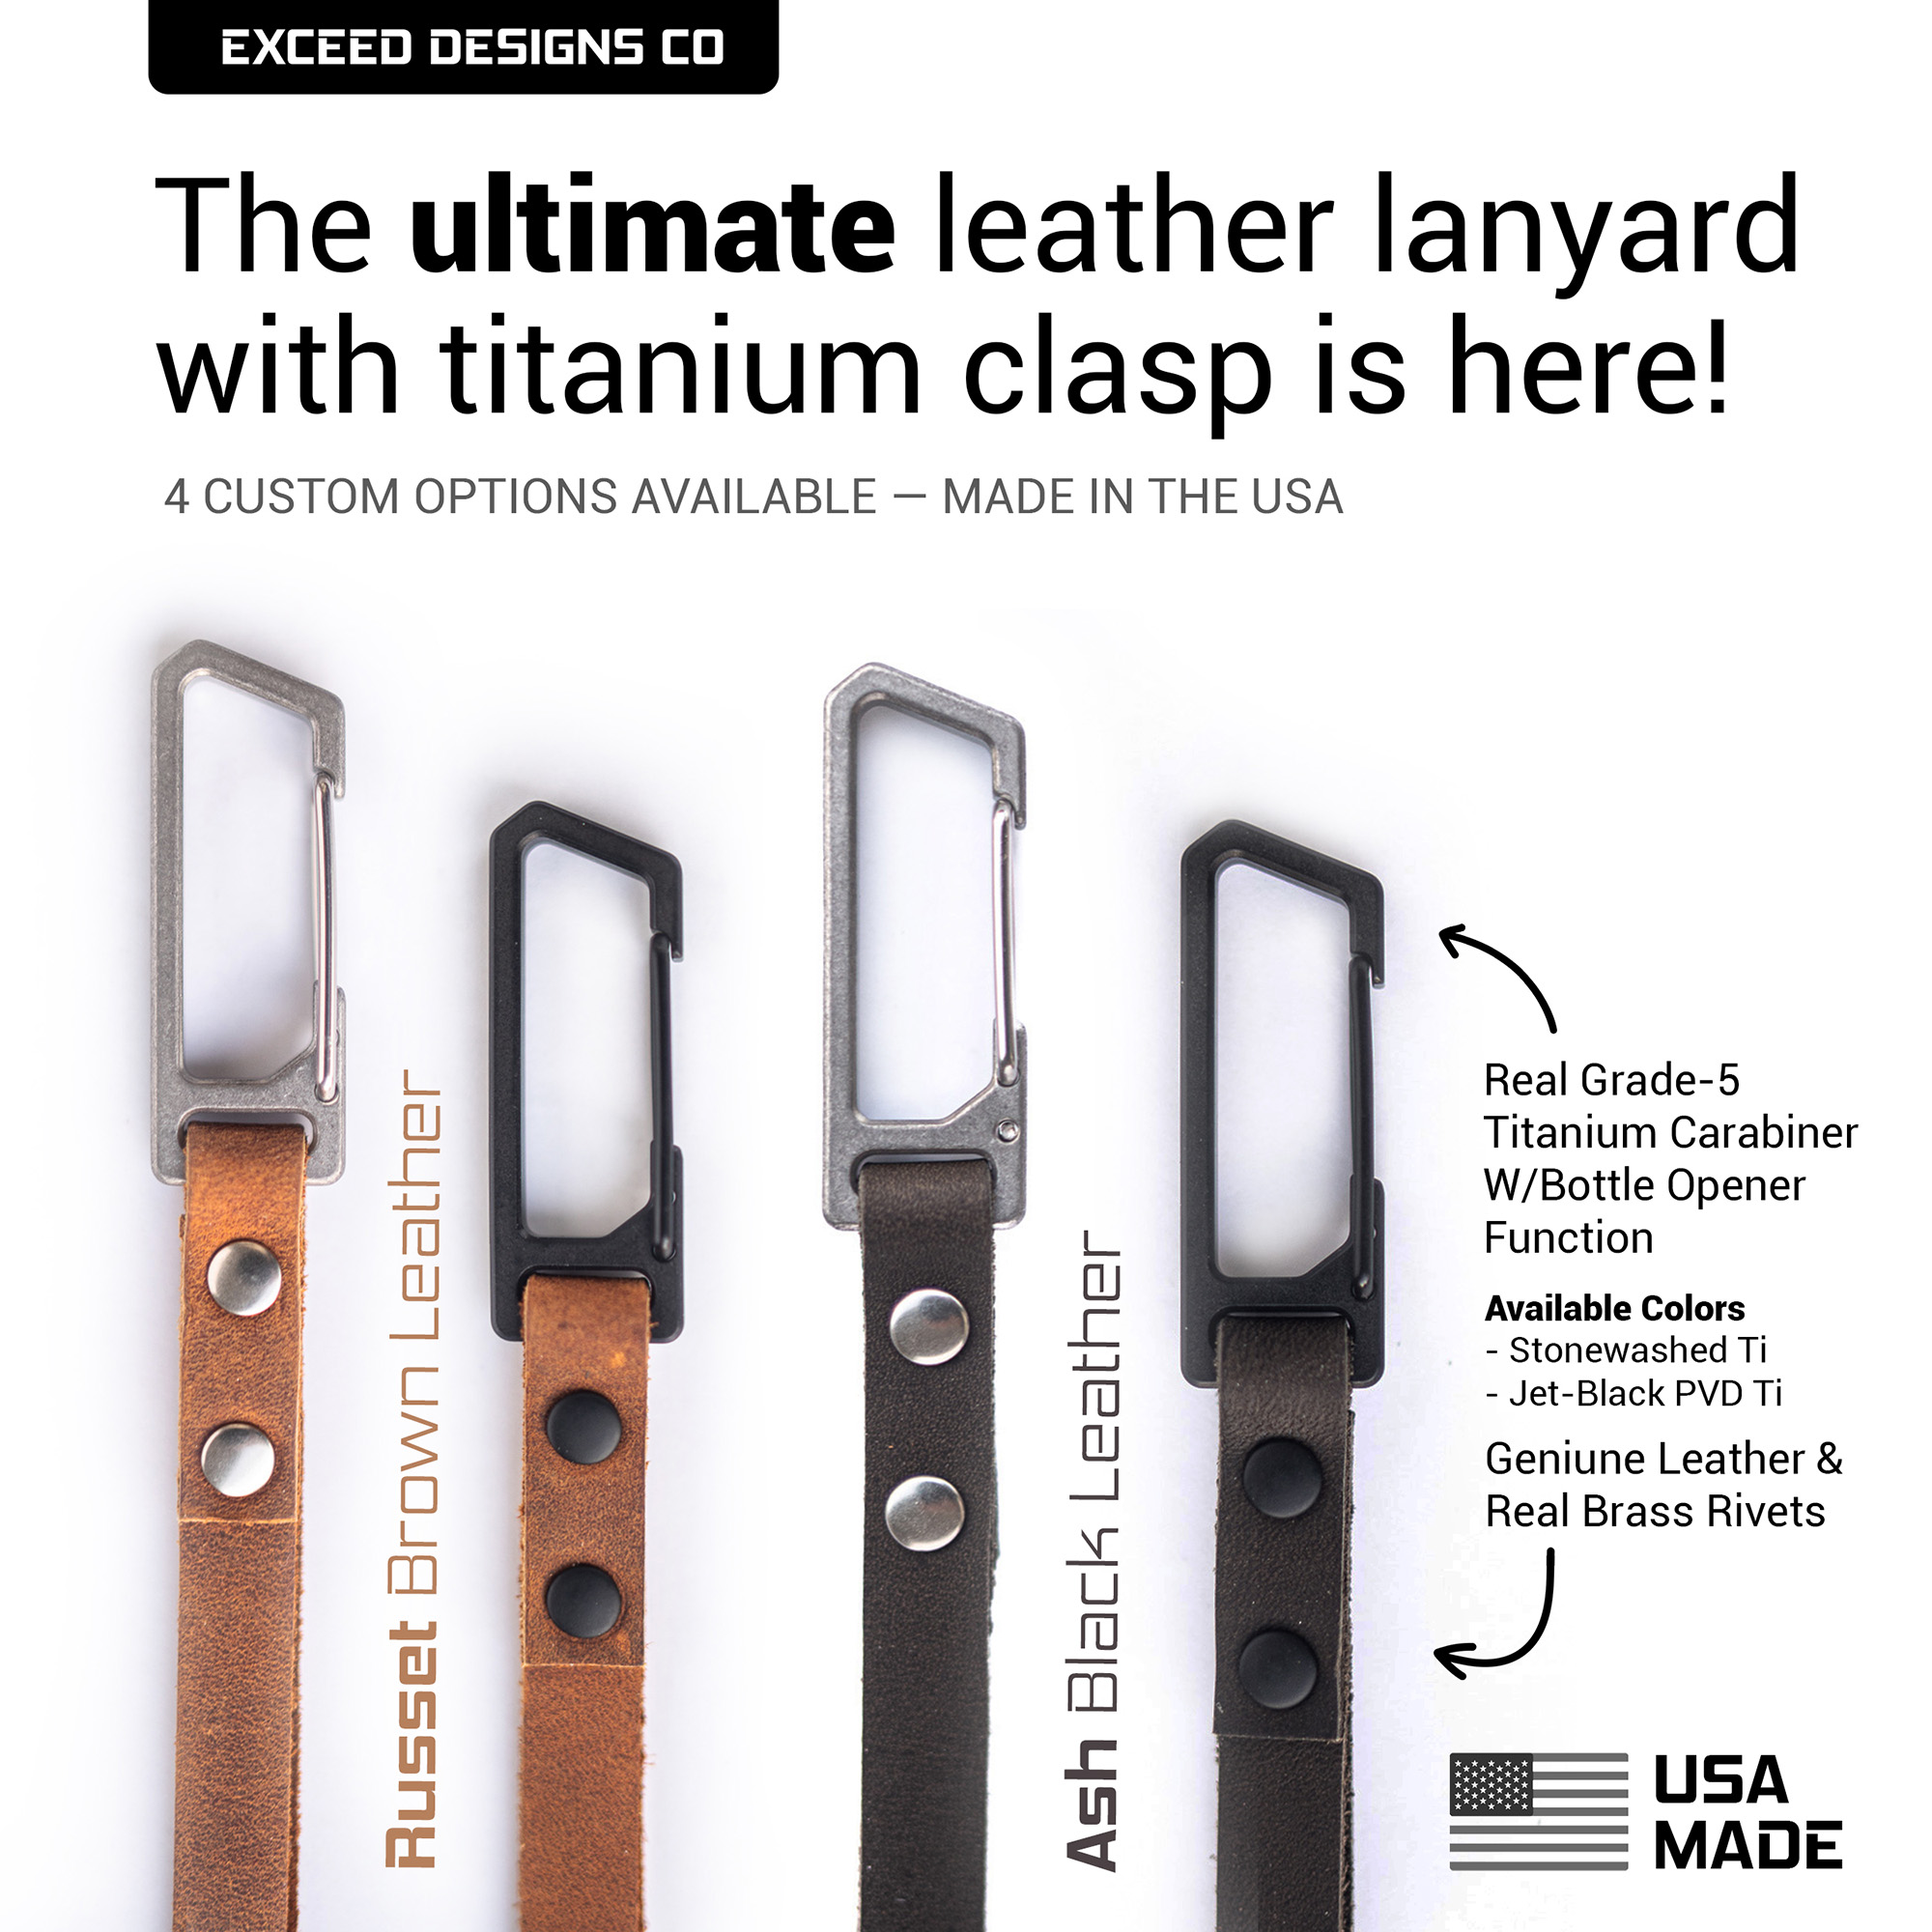 Lifetime Leather Lanyard